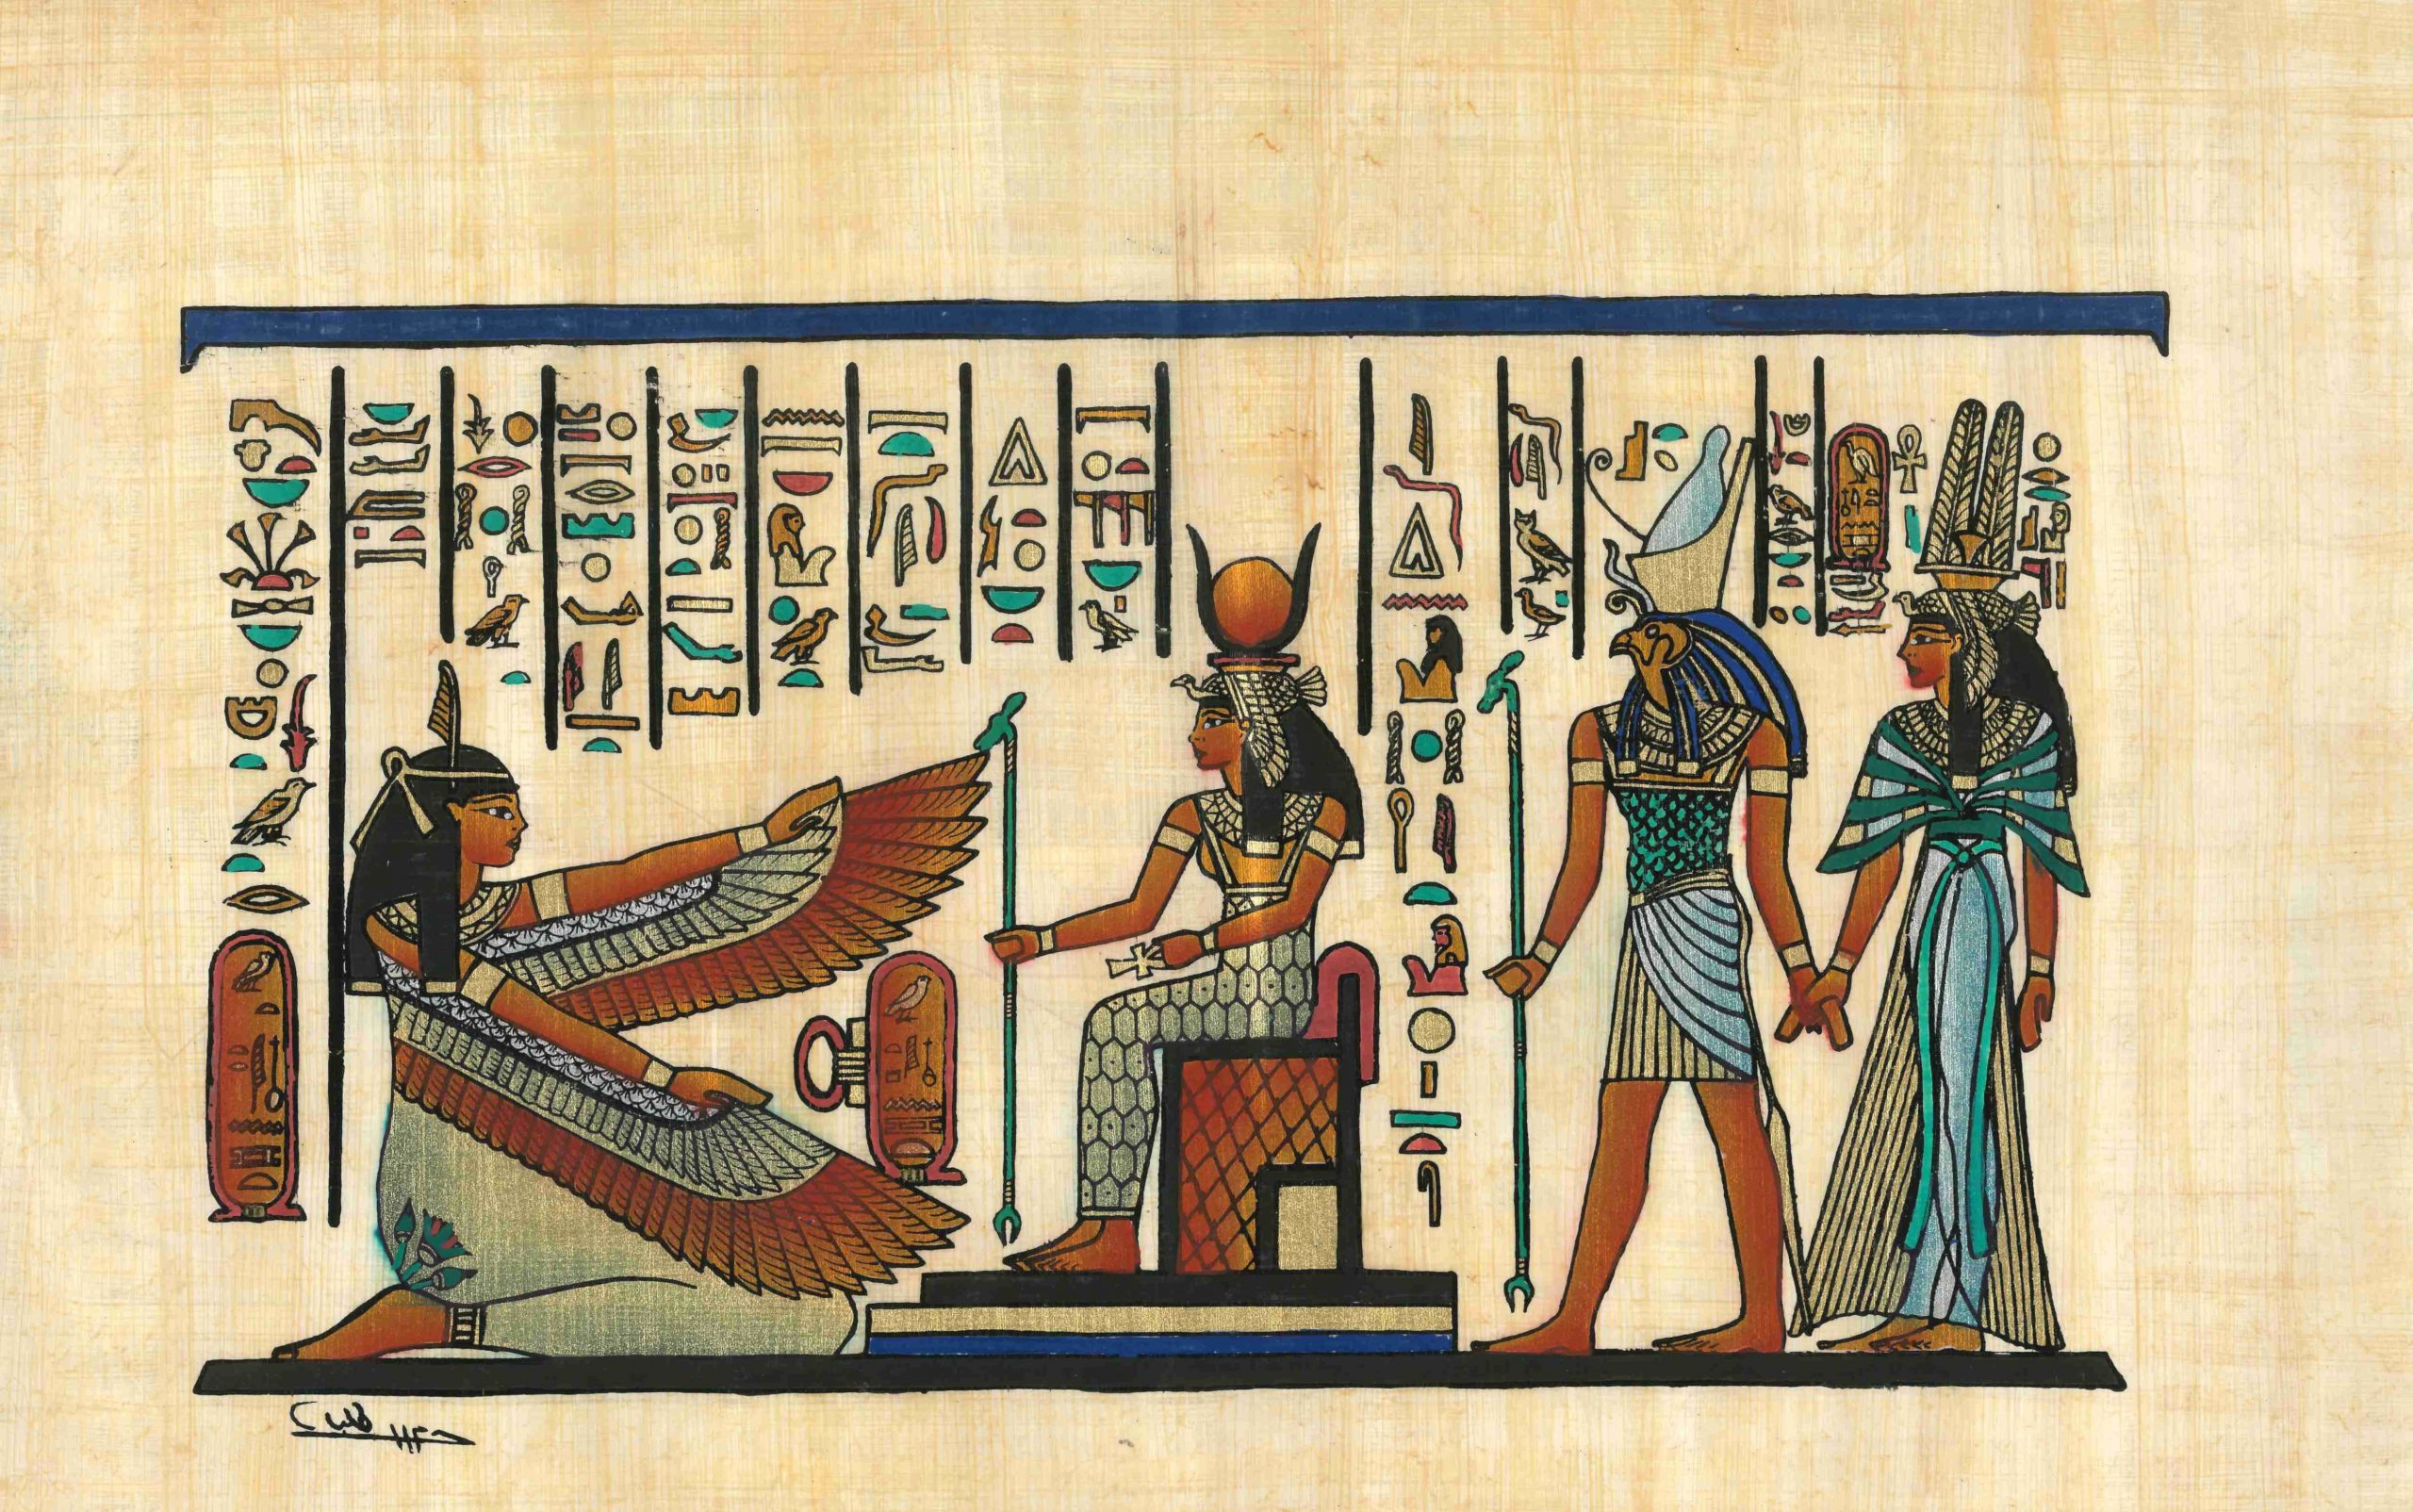 Что такое папирус в древнем египте